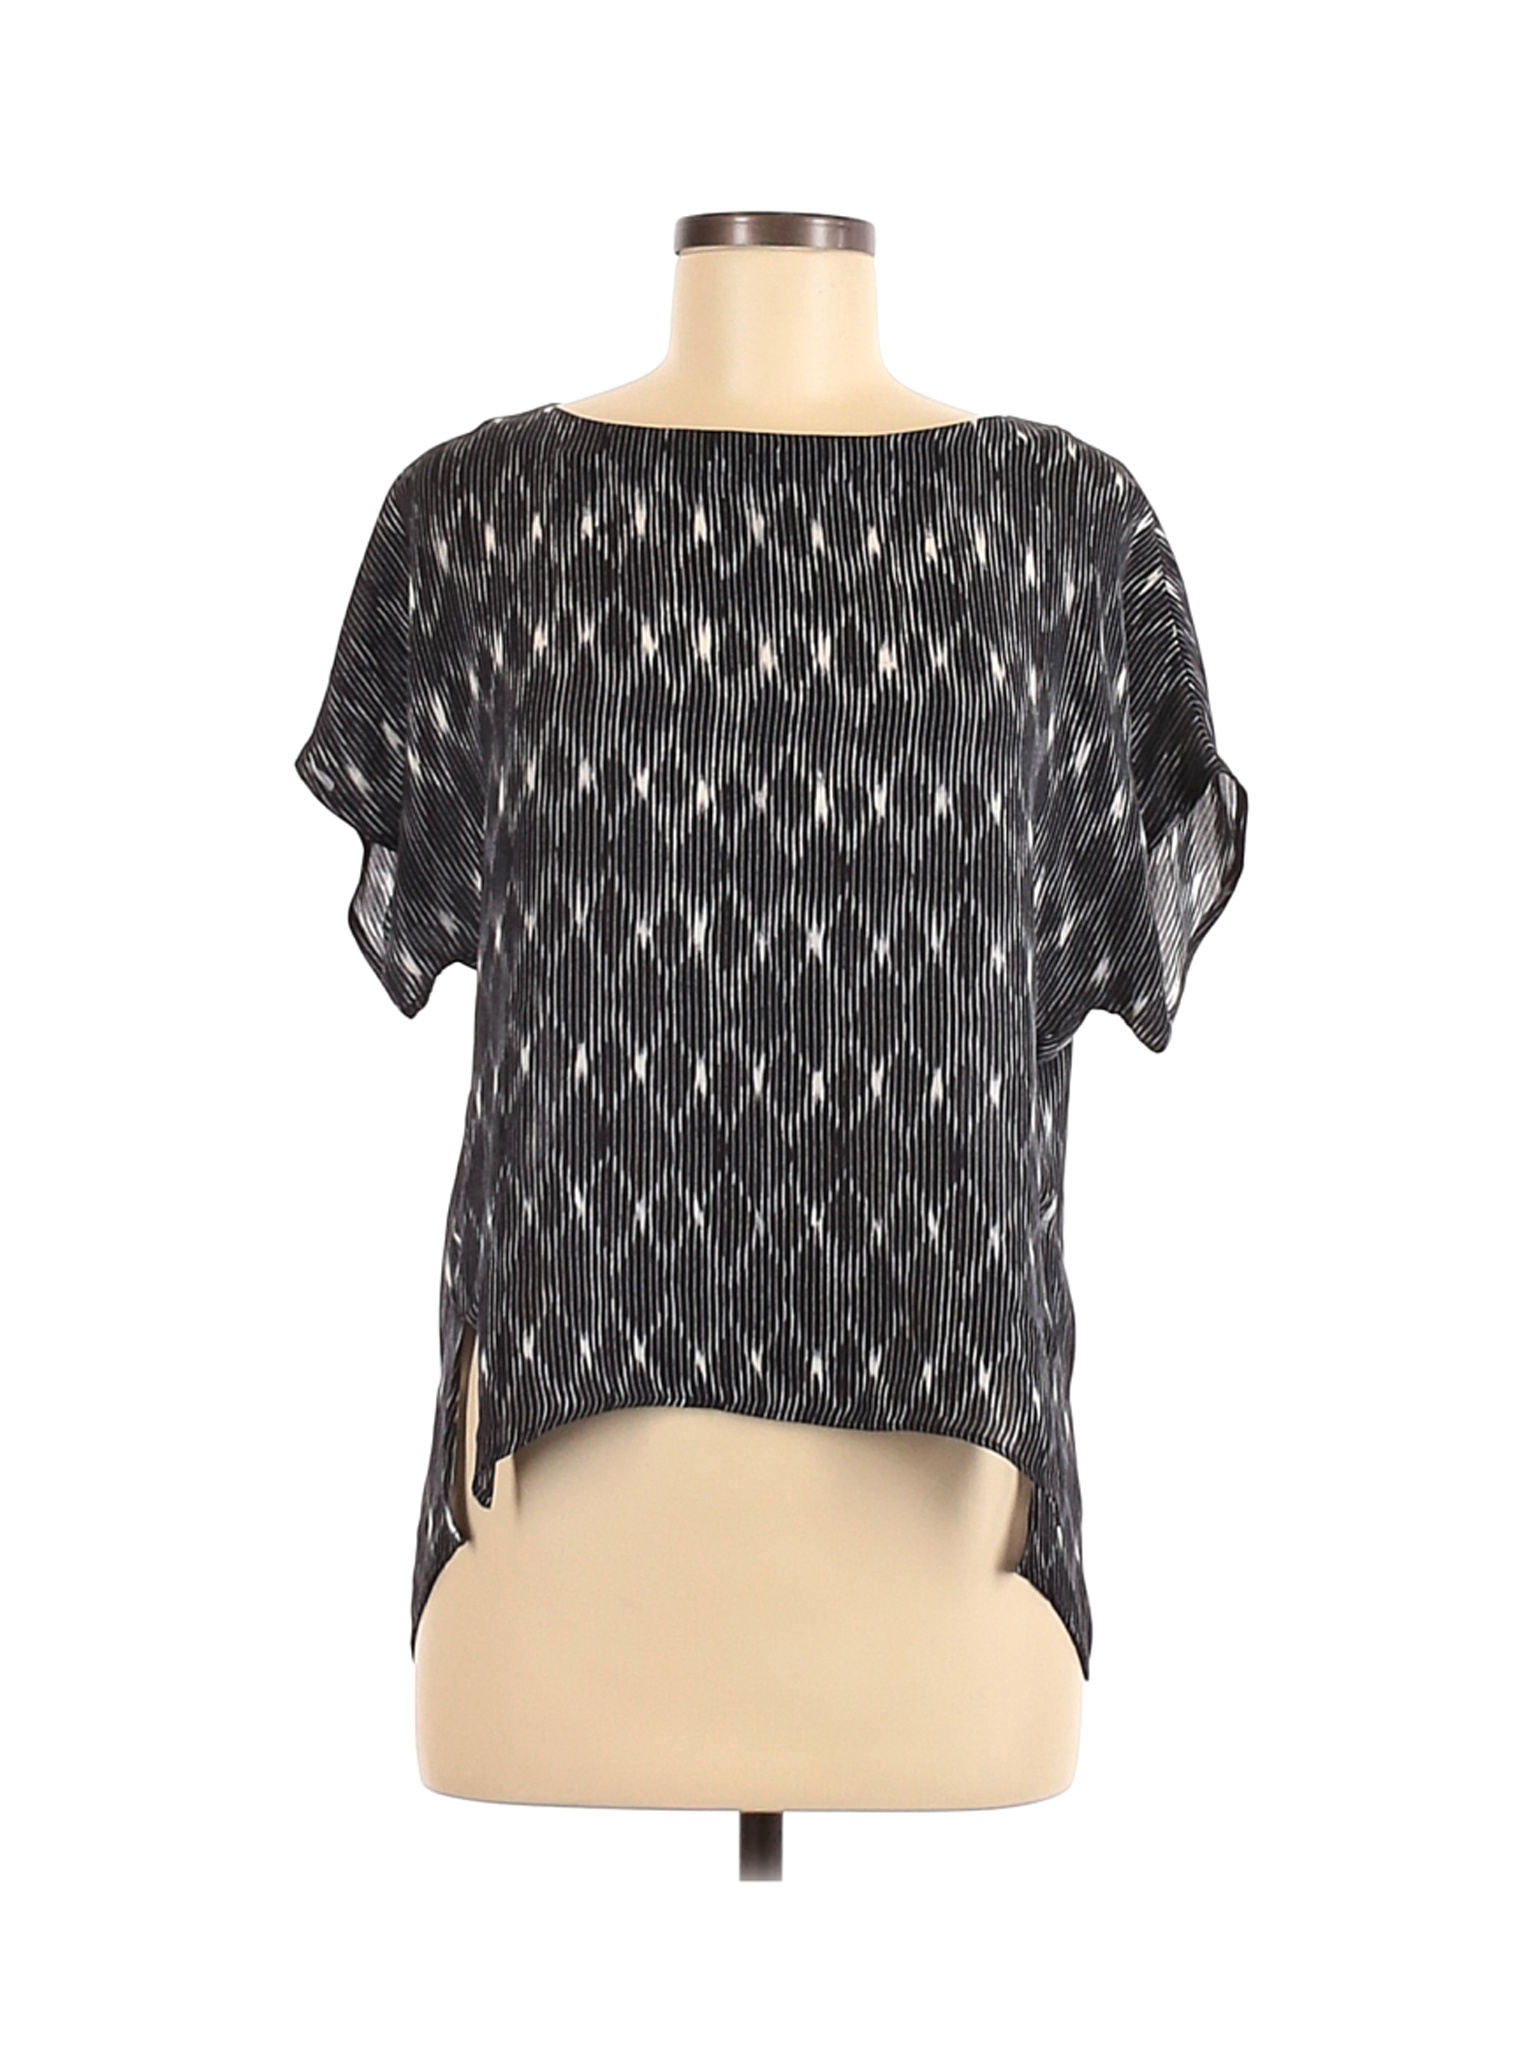 Brochu Walker Women Black Short Sleeve Silk Top M | eBay